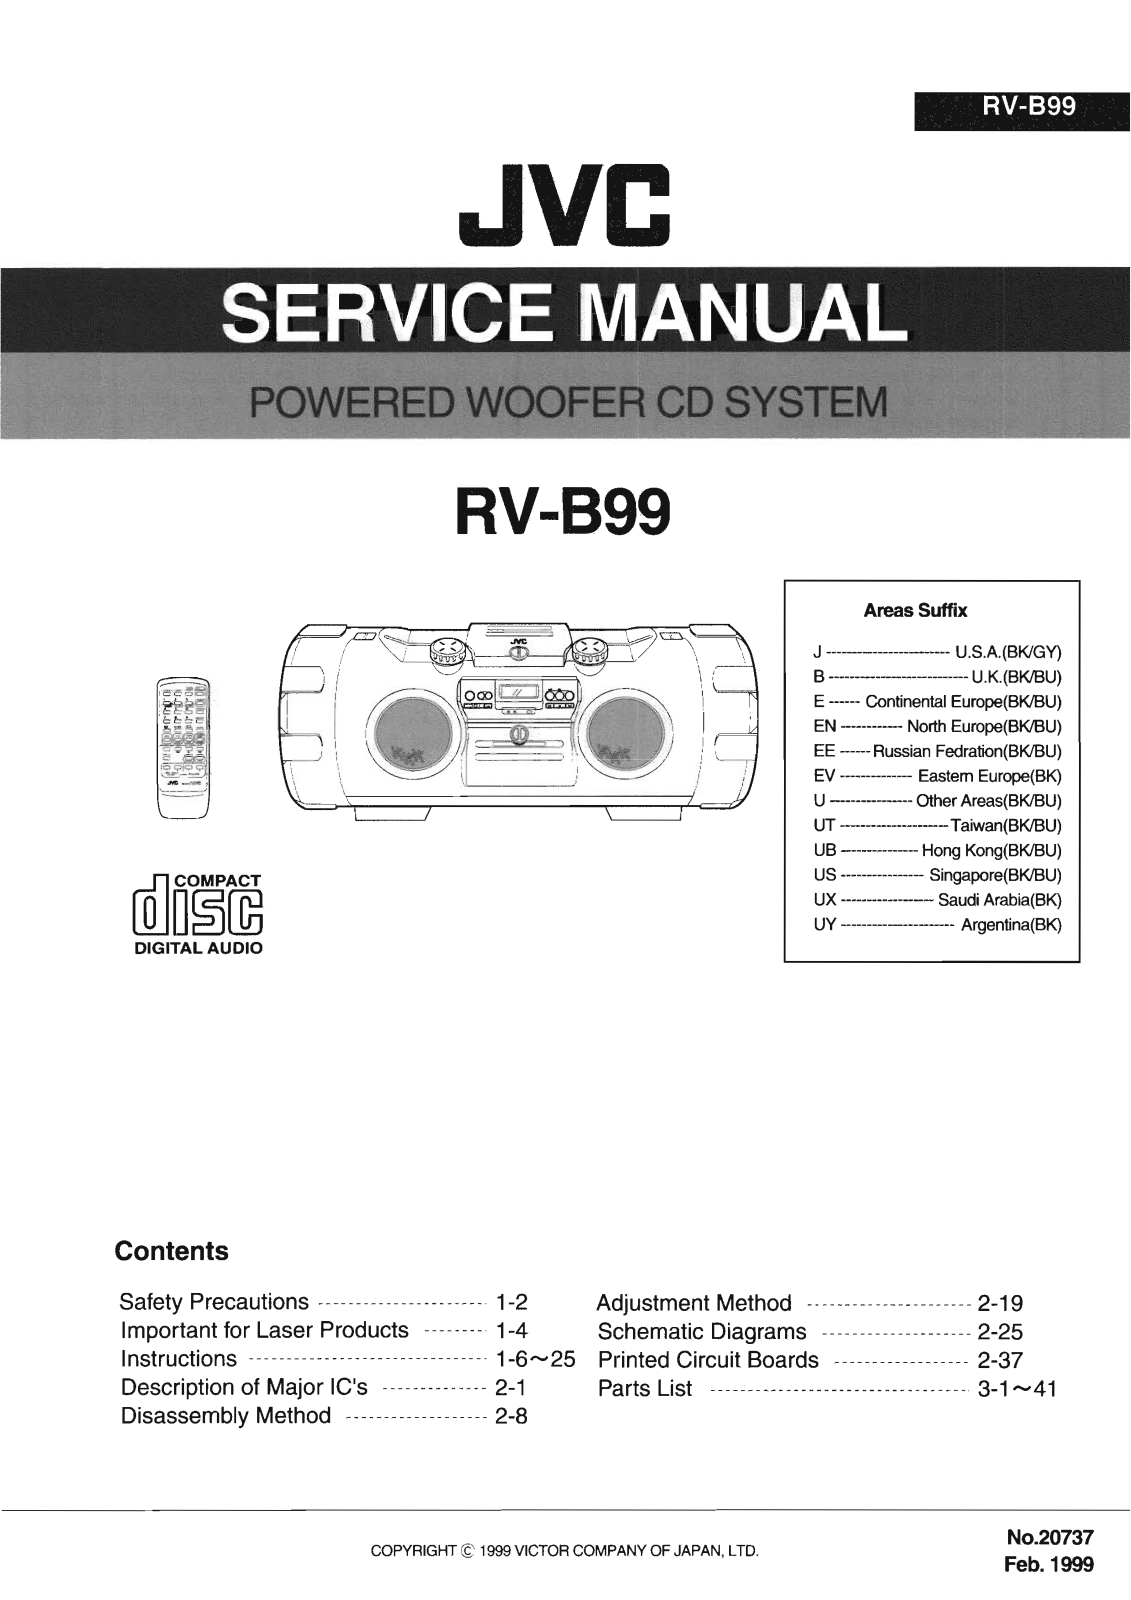 Jvc RV-B99 Service Manual